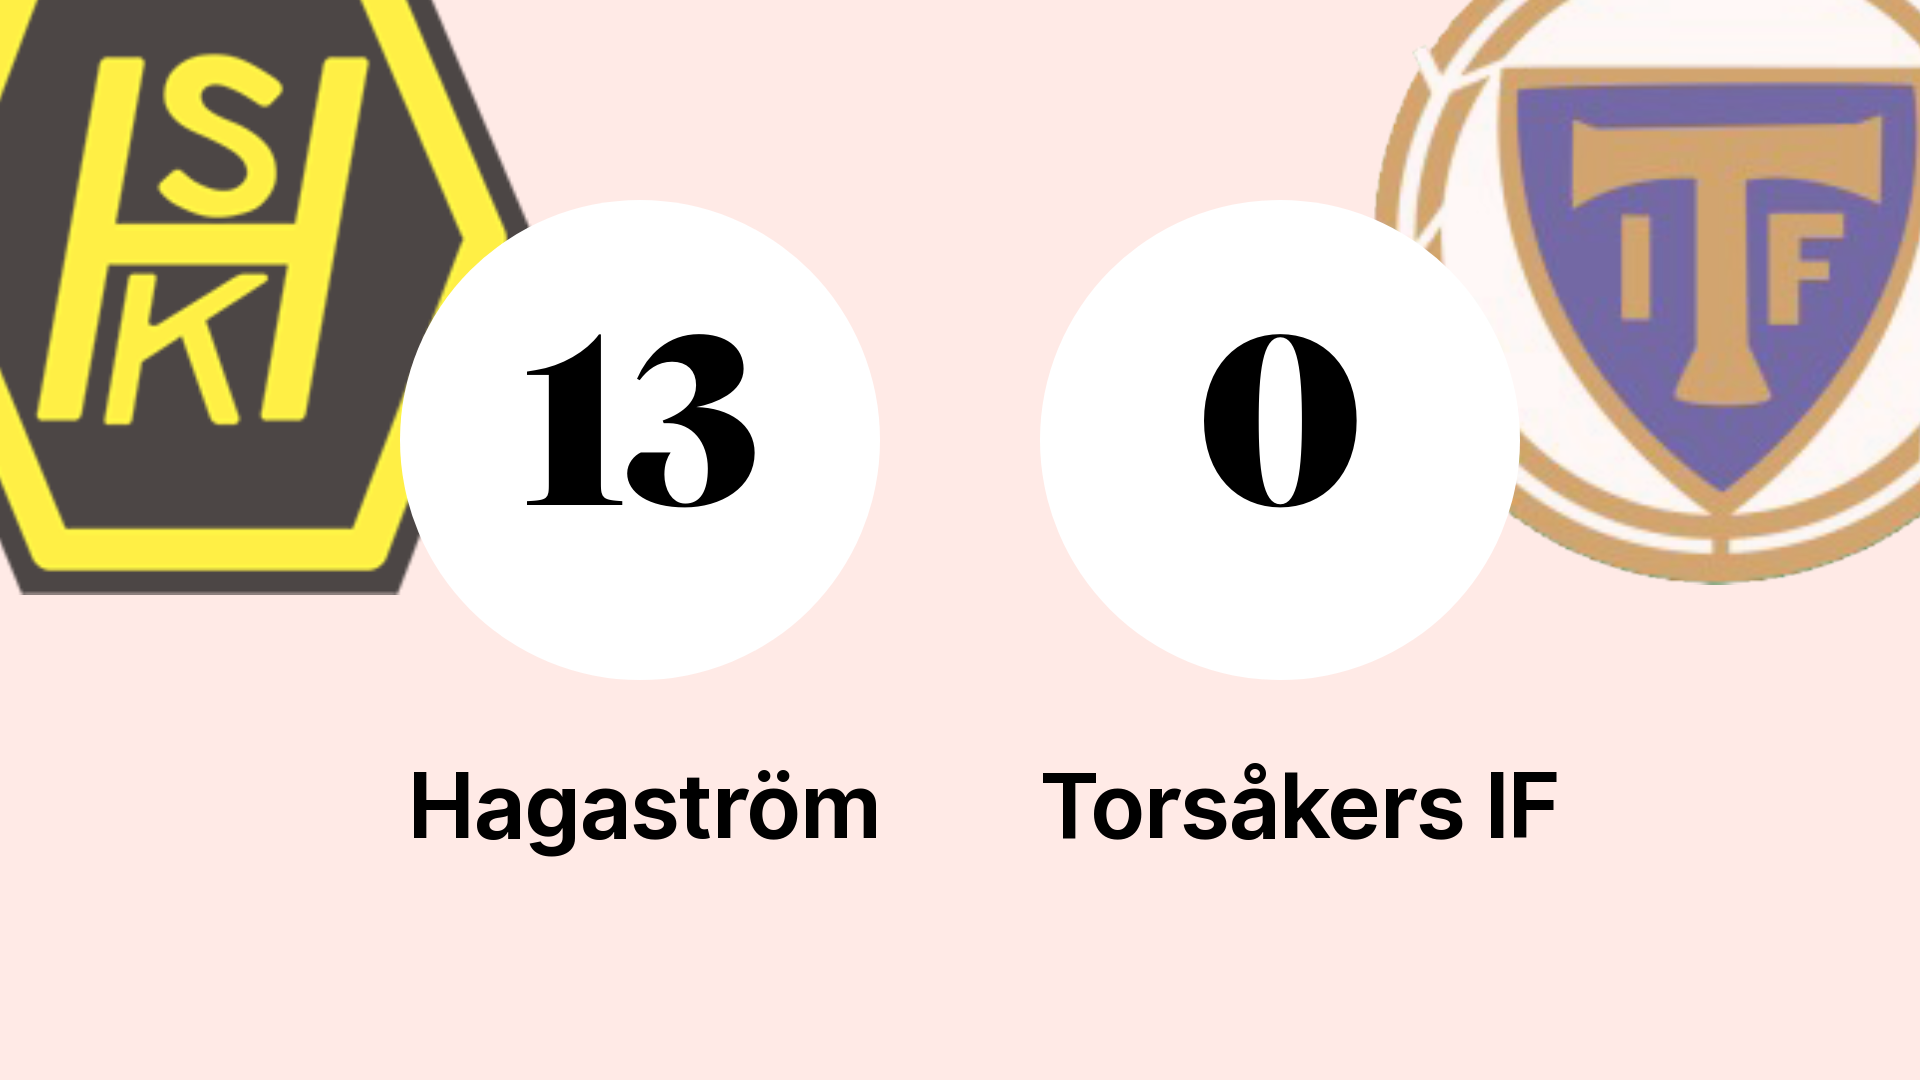 Goal Celebration as Hagaström Dominates Torsåkers IF at Gavlevallen